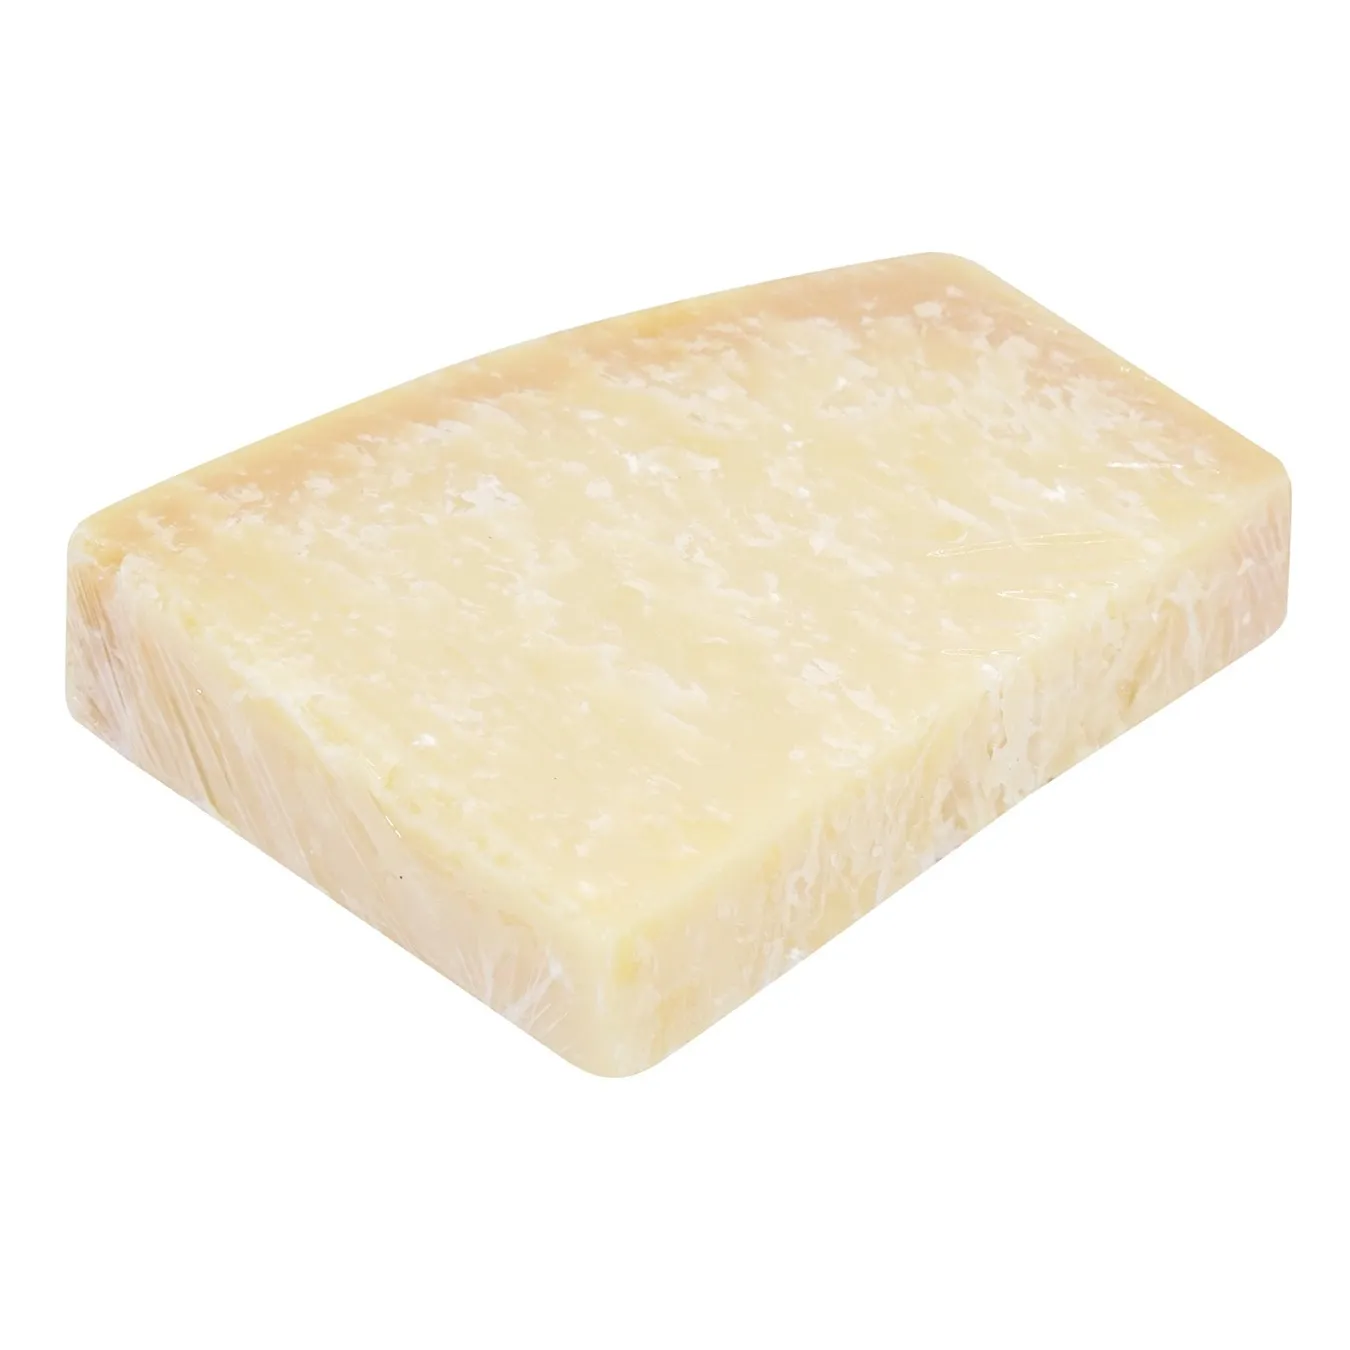 Valio Hard Cheese Parmesan 18 months 36% weight